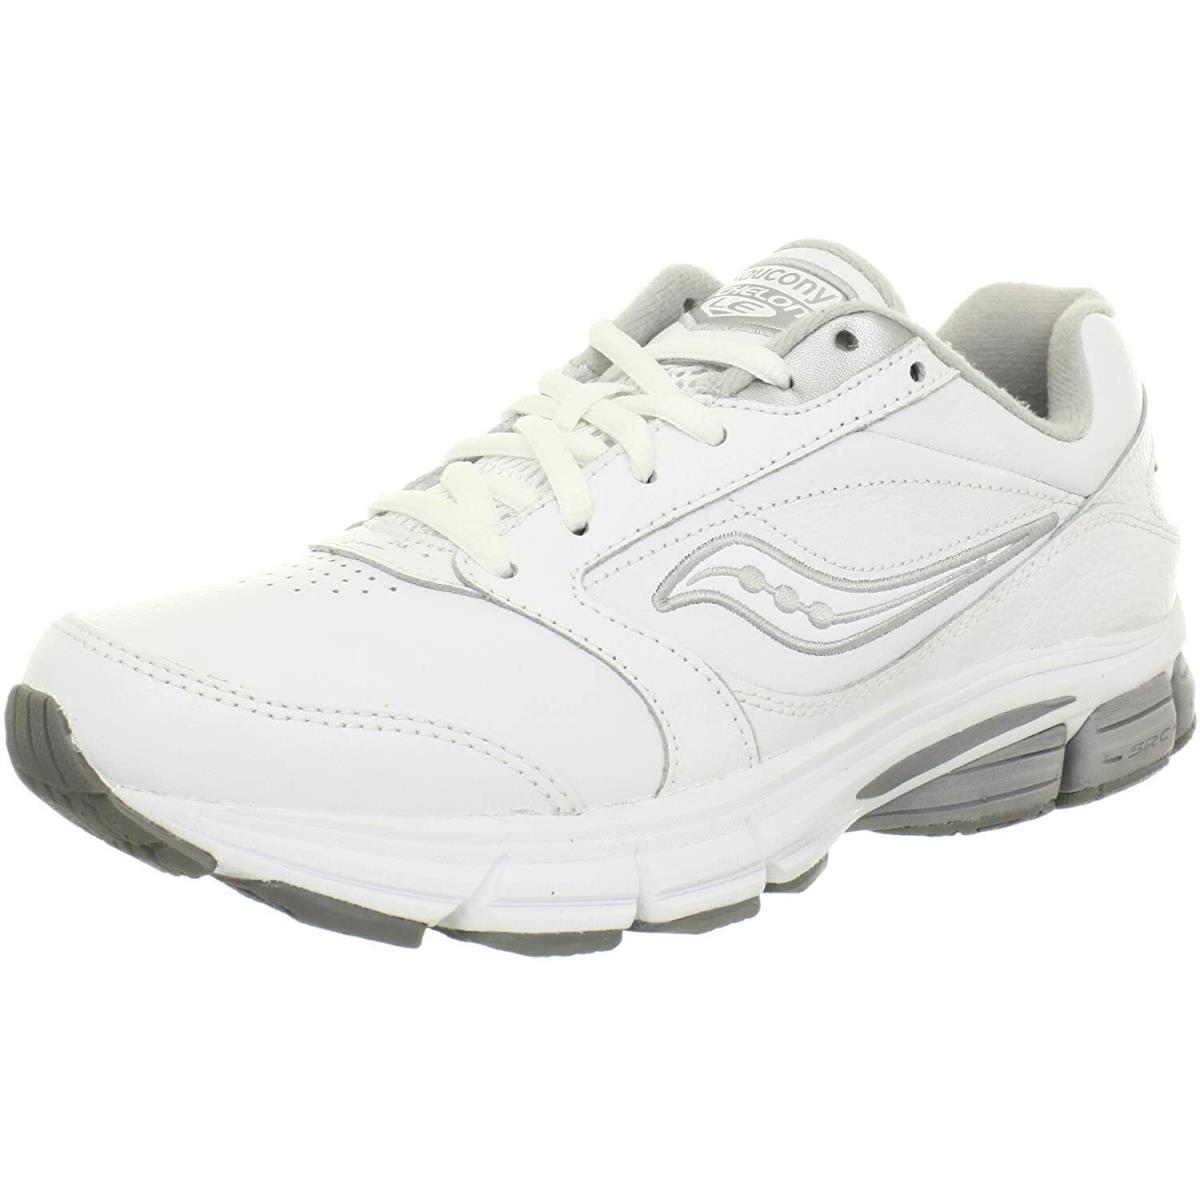 Saucony Women`s Echelon LE2 Walking Shoe White/silver 5.5 W US - White